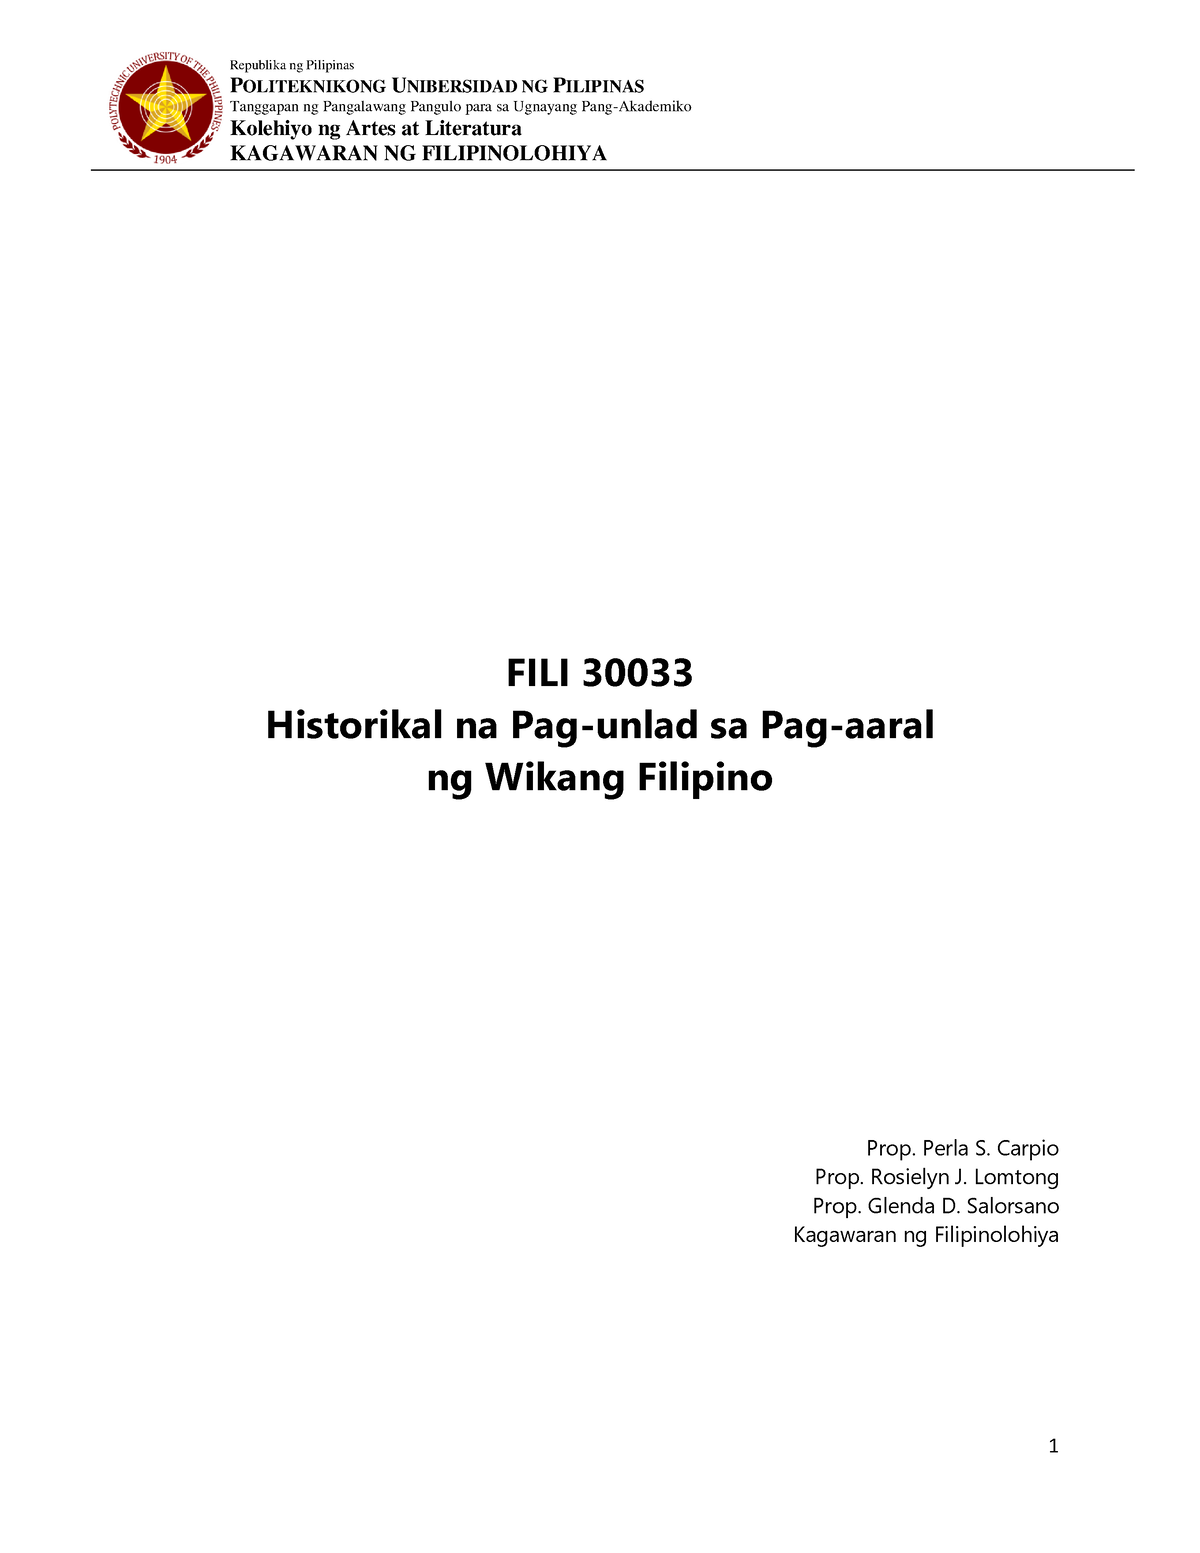 Historikal na Pag-unlad sa Pag-aaral ng Wikang Filipino 1 - P Tanggapan